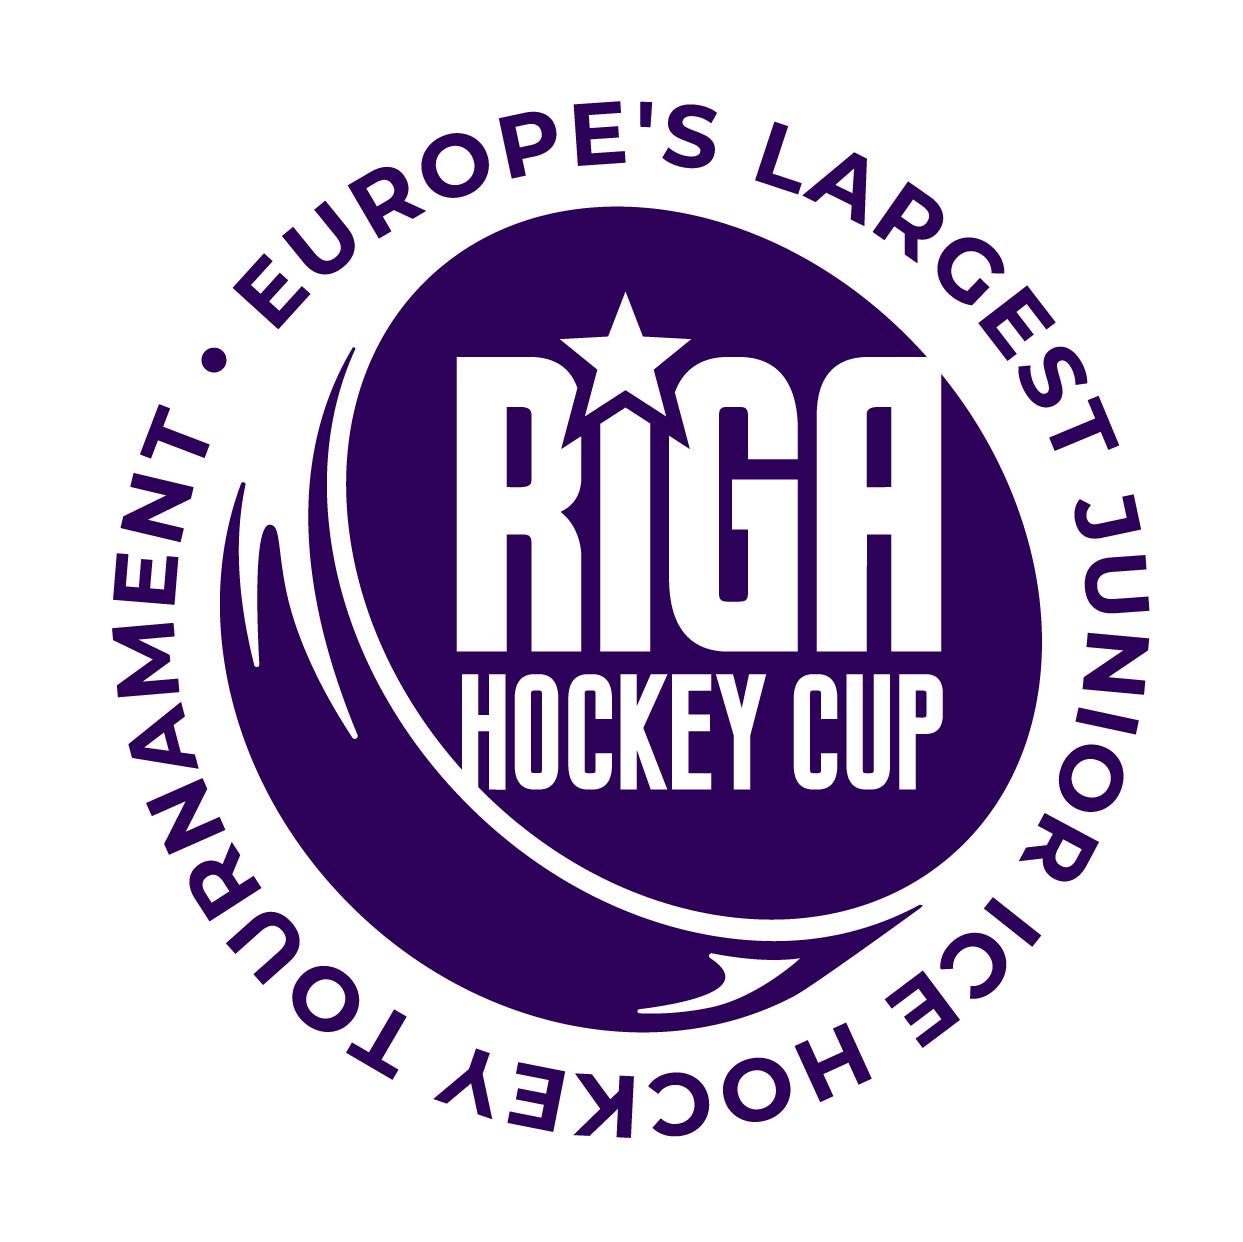 Riga Cup